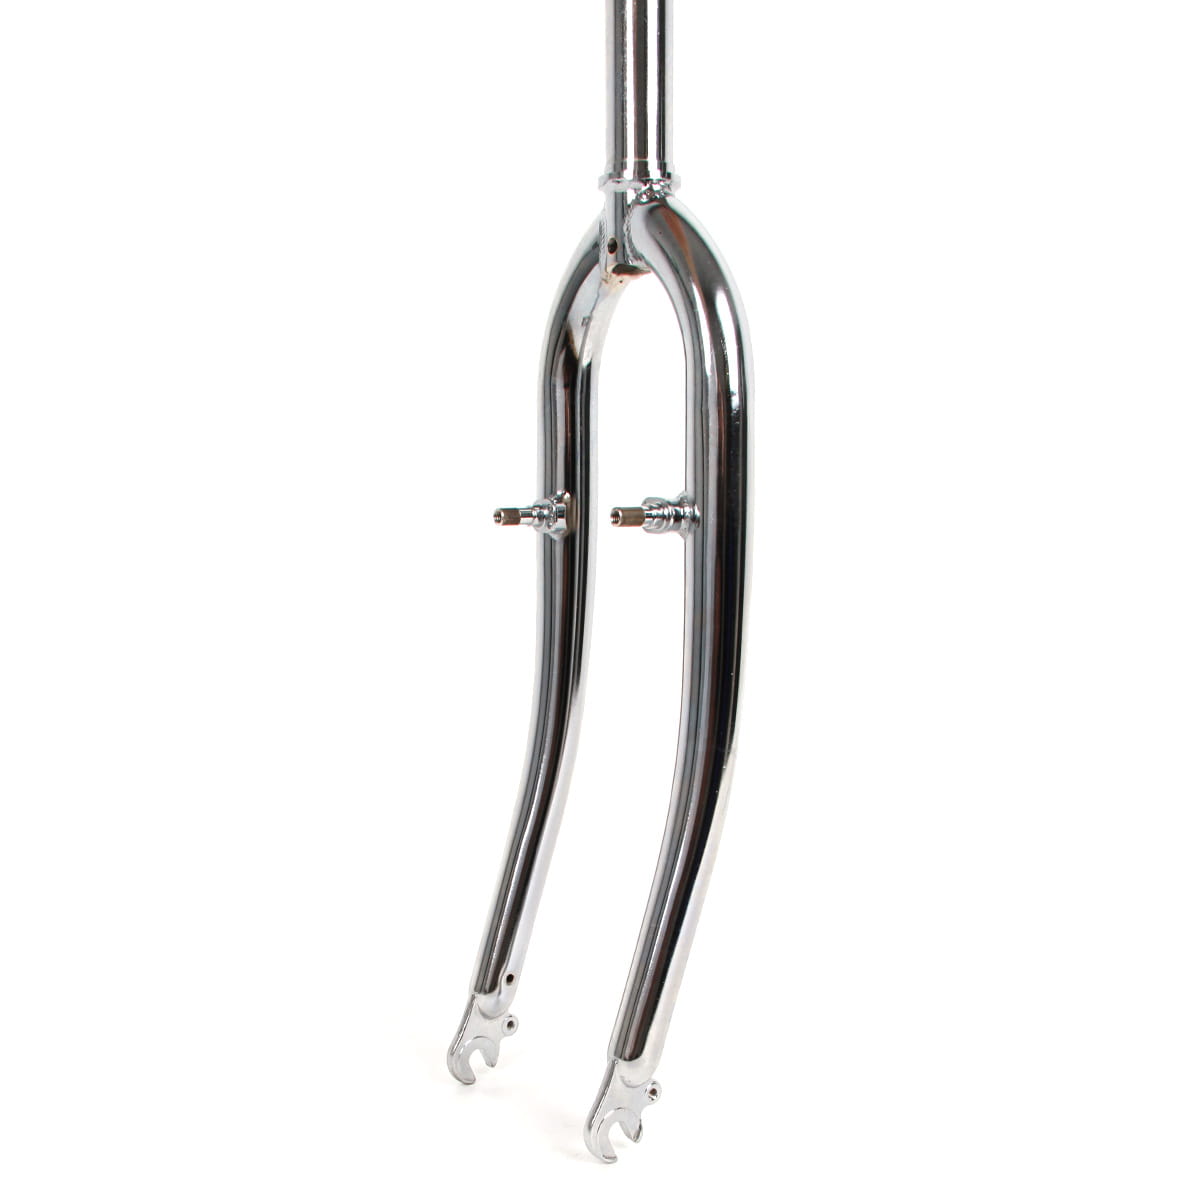 Point-Racing 26 inch rigid fork CroMo silver | Rigid Forks | BMO Bike ...